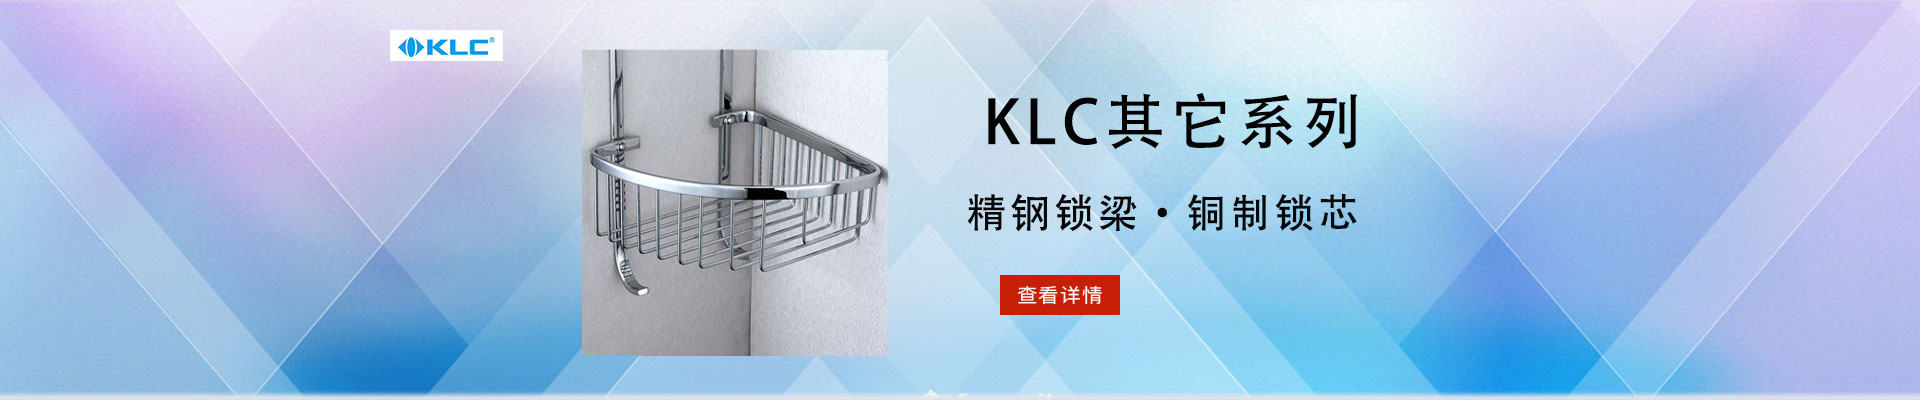 KLC|锁